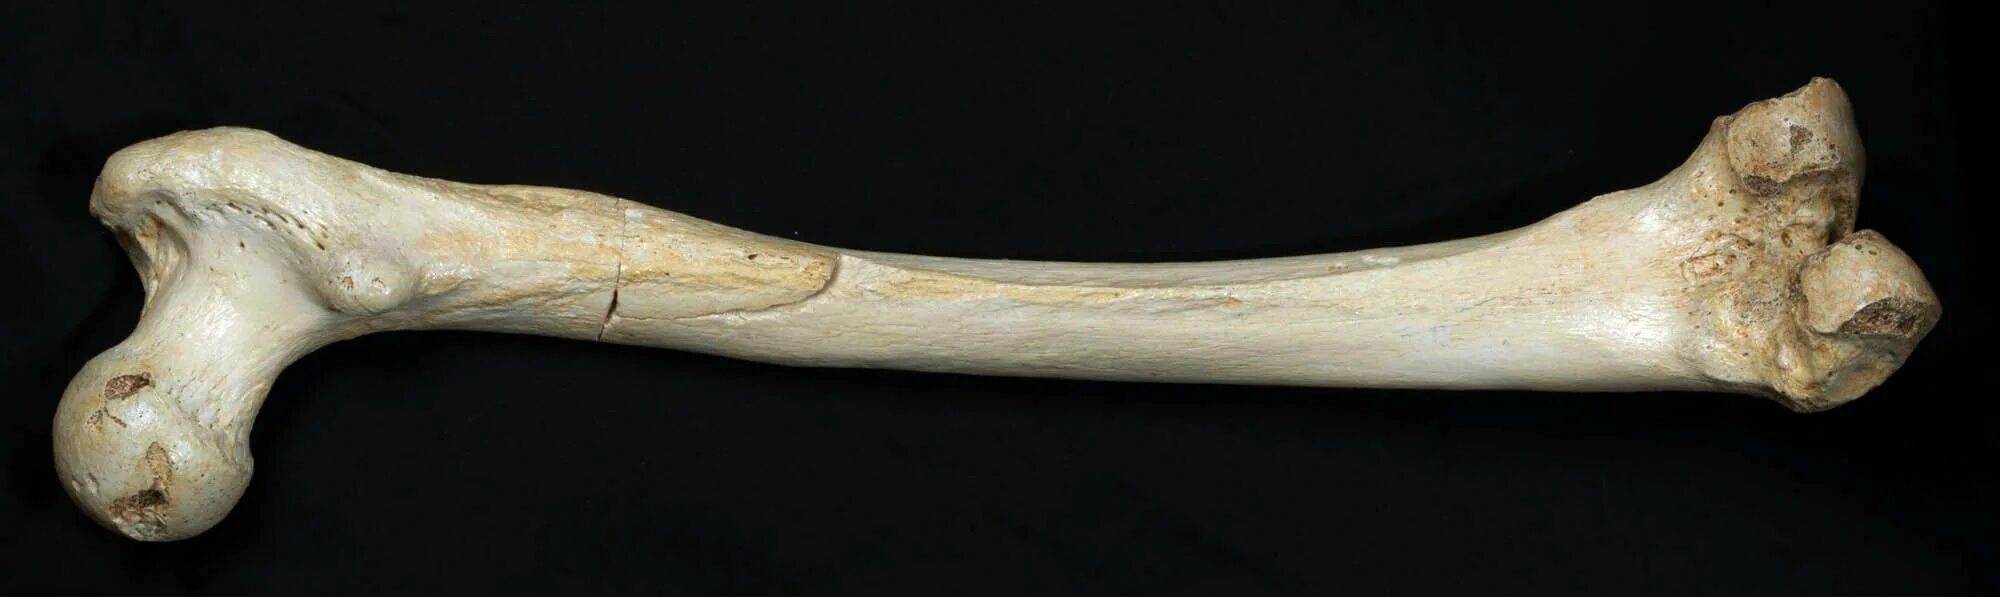 Образована тремя сросшимися костями. Малая берцовая кость мамонта. Человеческие кости. Натуральная кость.